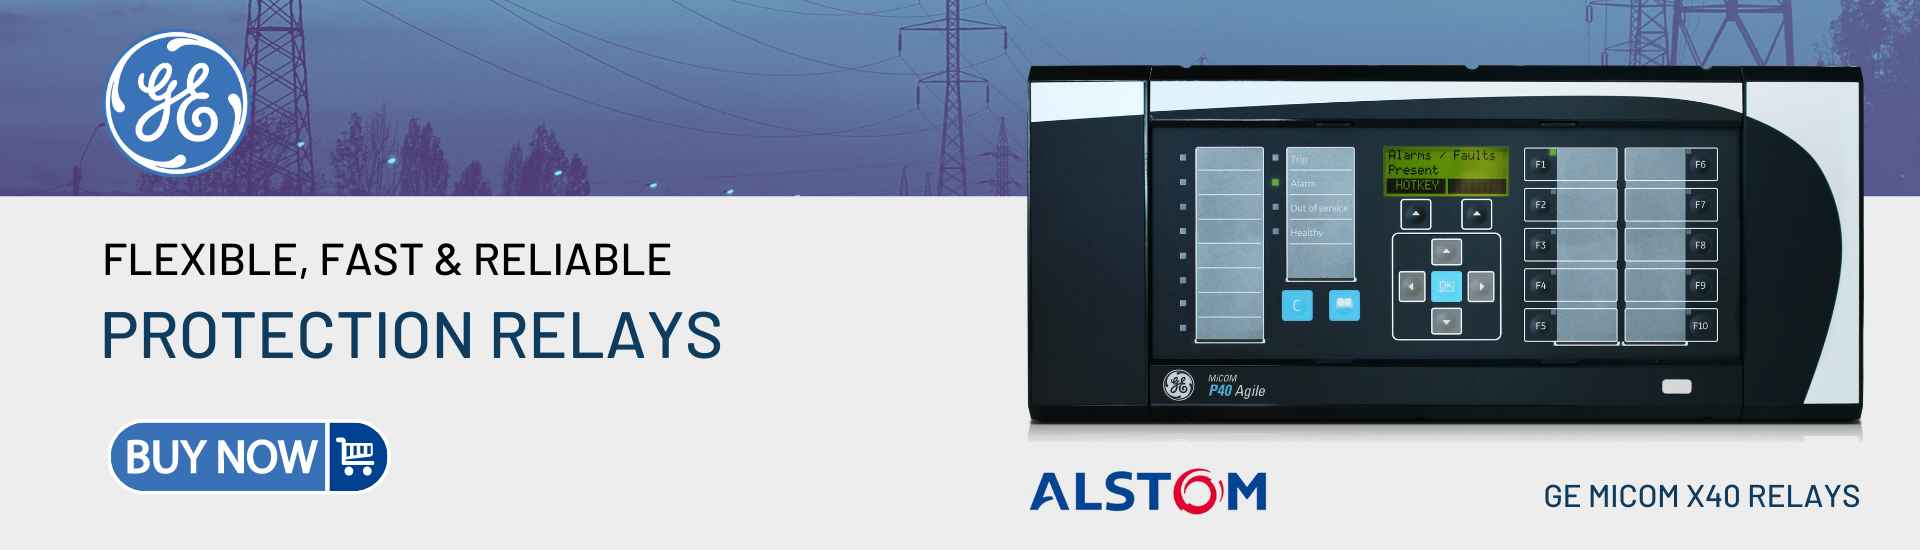 Alstom Micom P40 Agile Enhanced protection relay